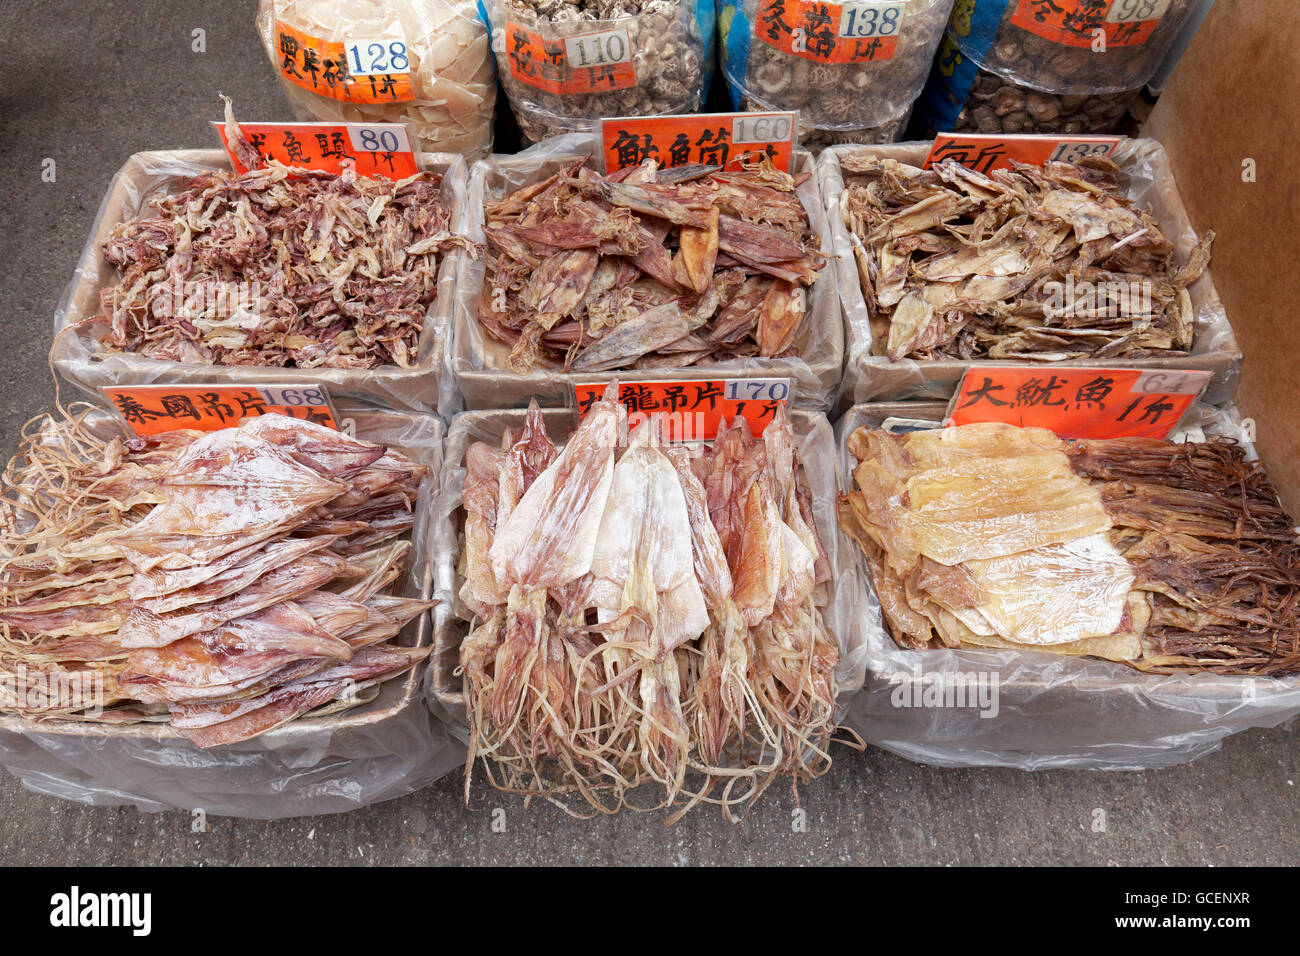 Pesce essiccato per la vendita, Des Voeux Road West, Sheung Wan District, Isola di Hong Kong, Hong Kong, Cina Foto Stock